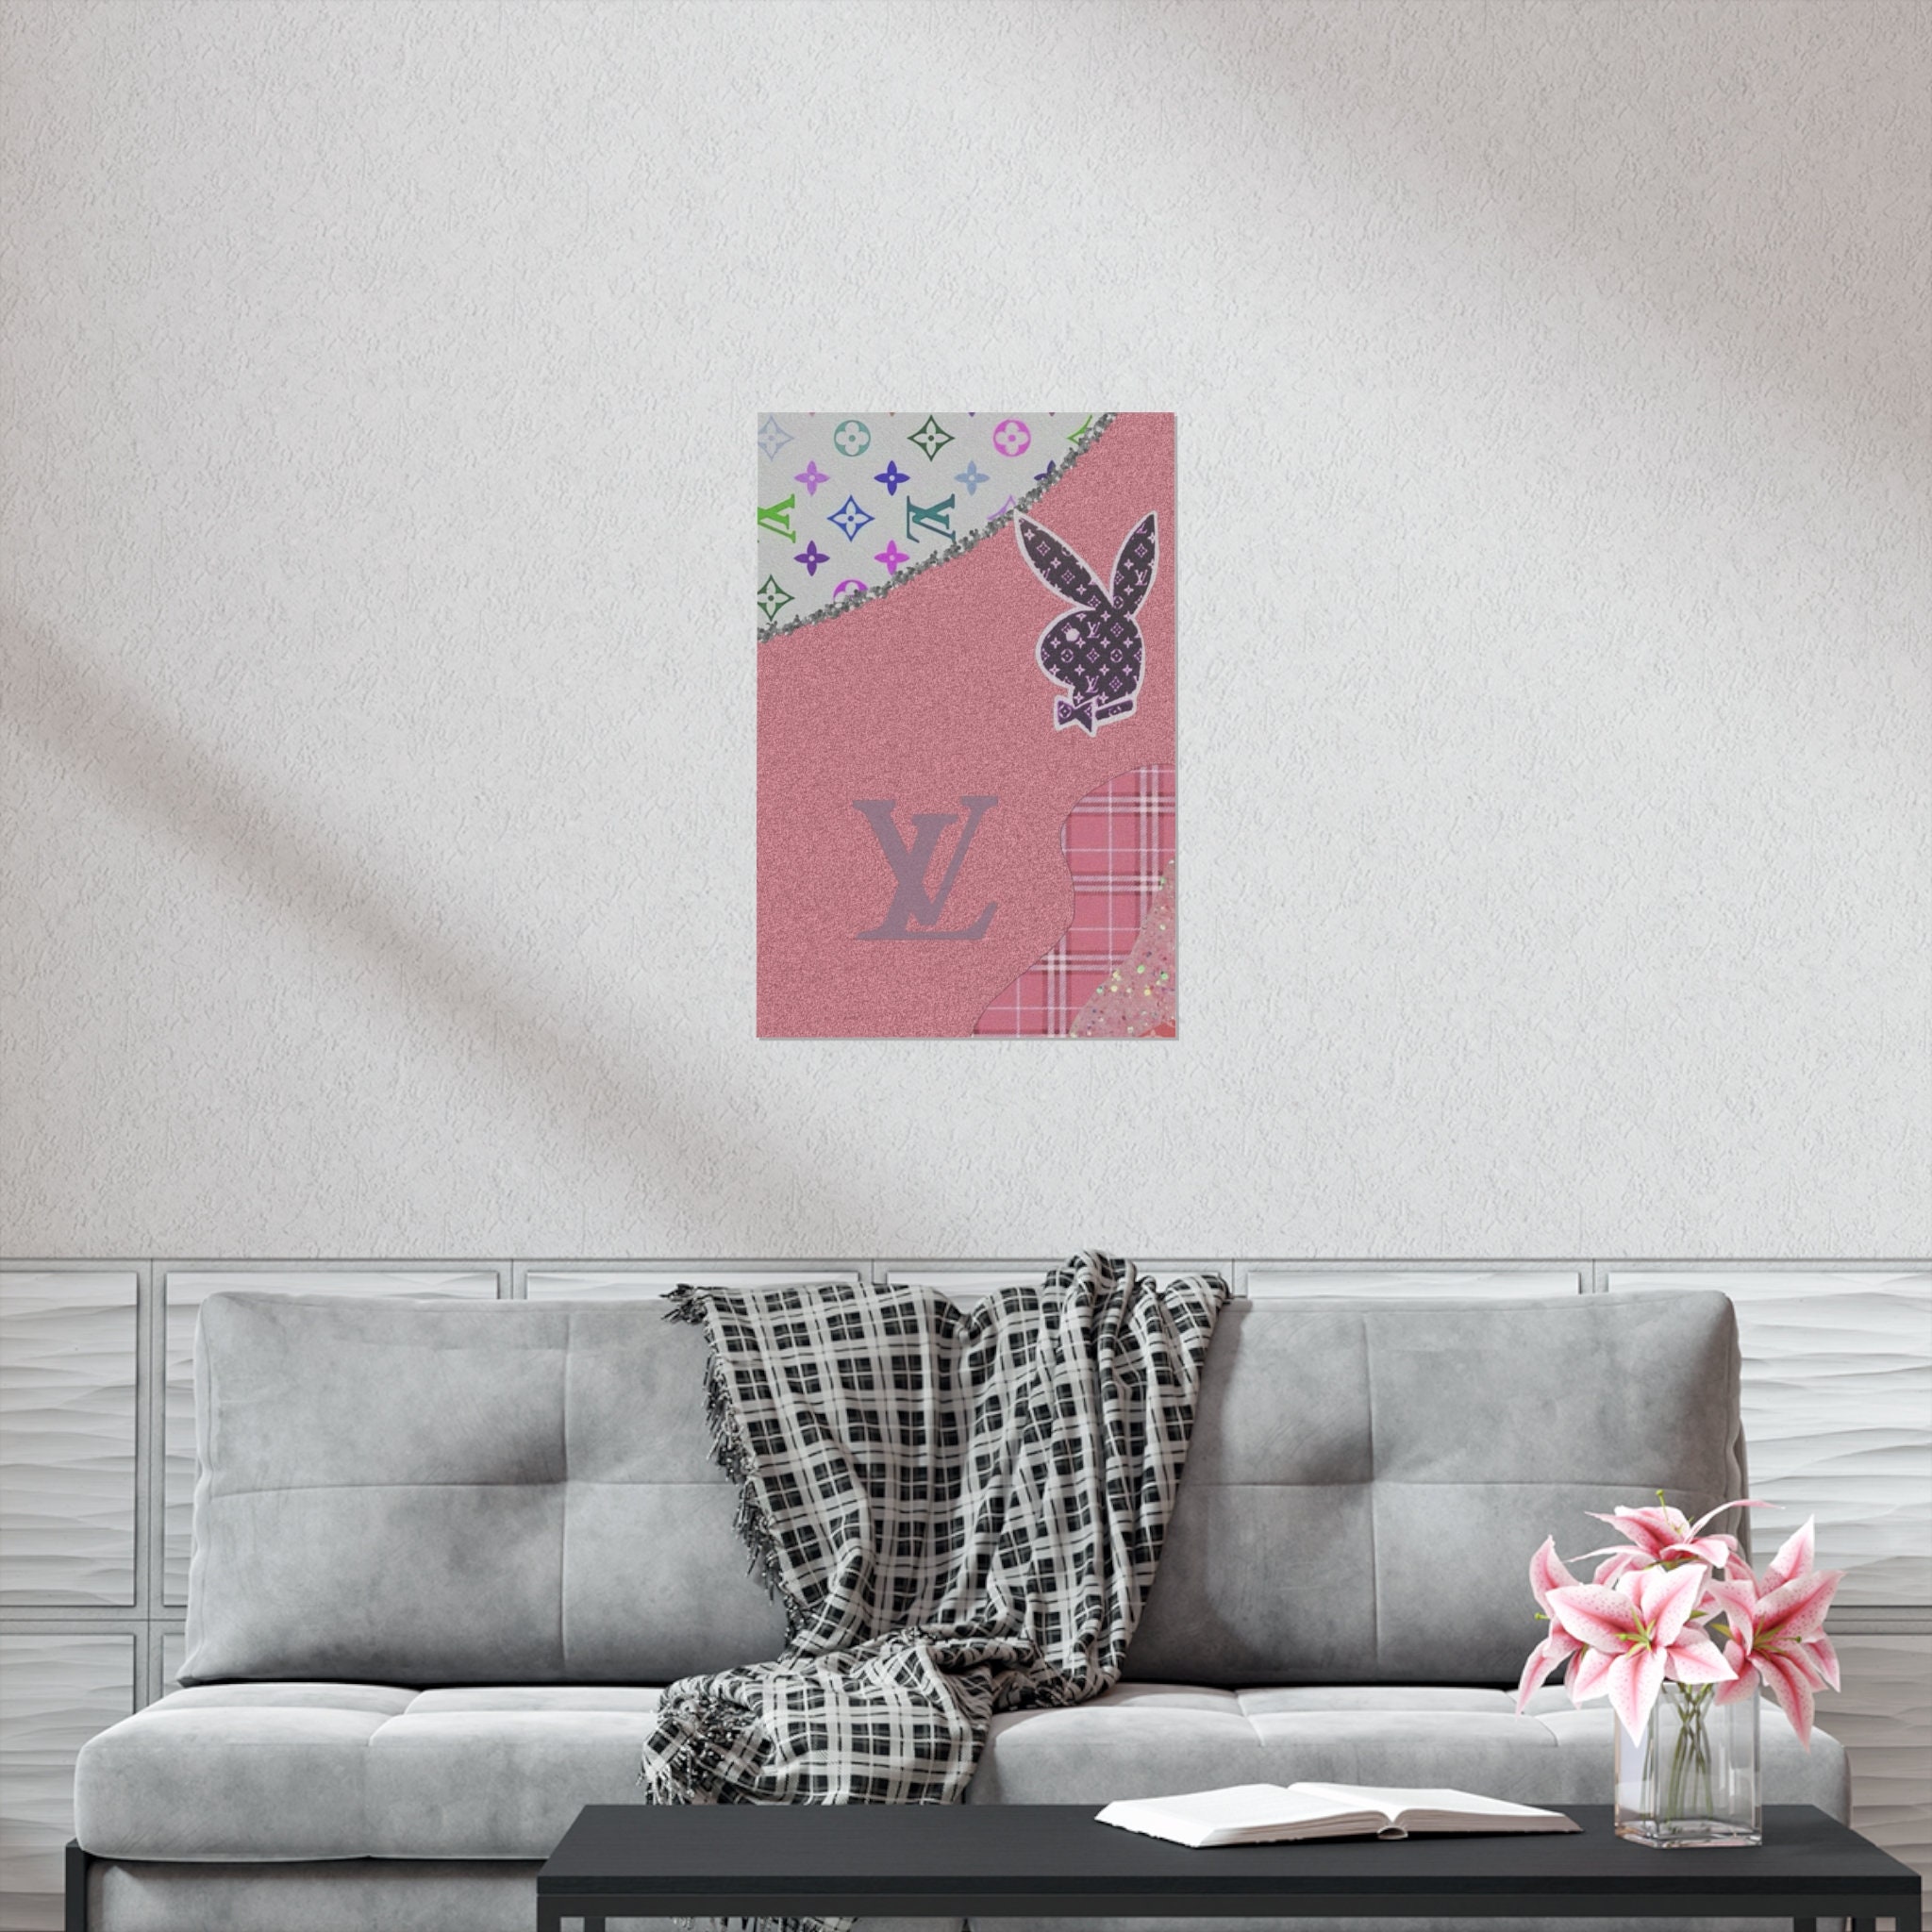 PB & LV Pink Premium Matte Vertical Posters 